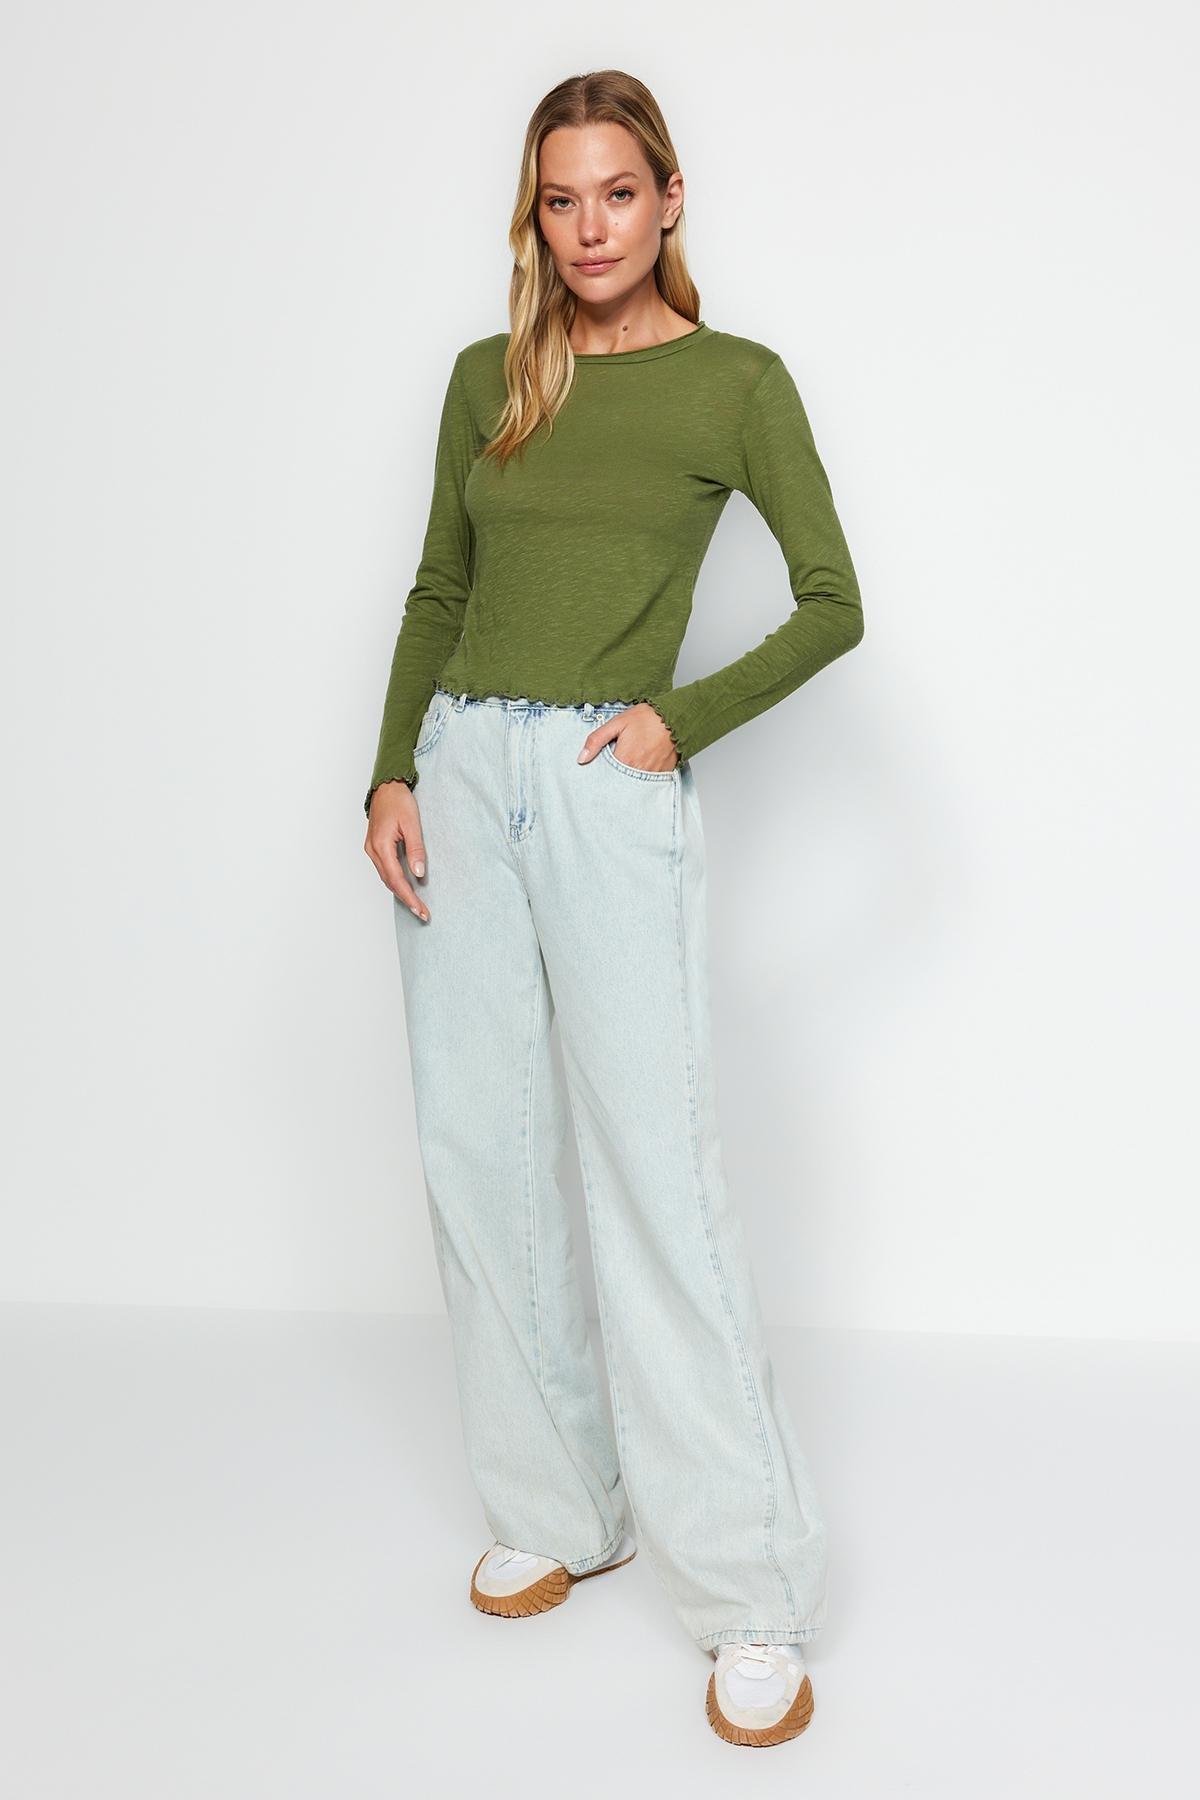 Trendyol - Green Regular Detailed Knitted Blouse